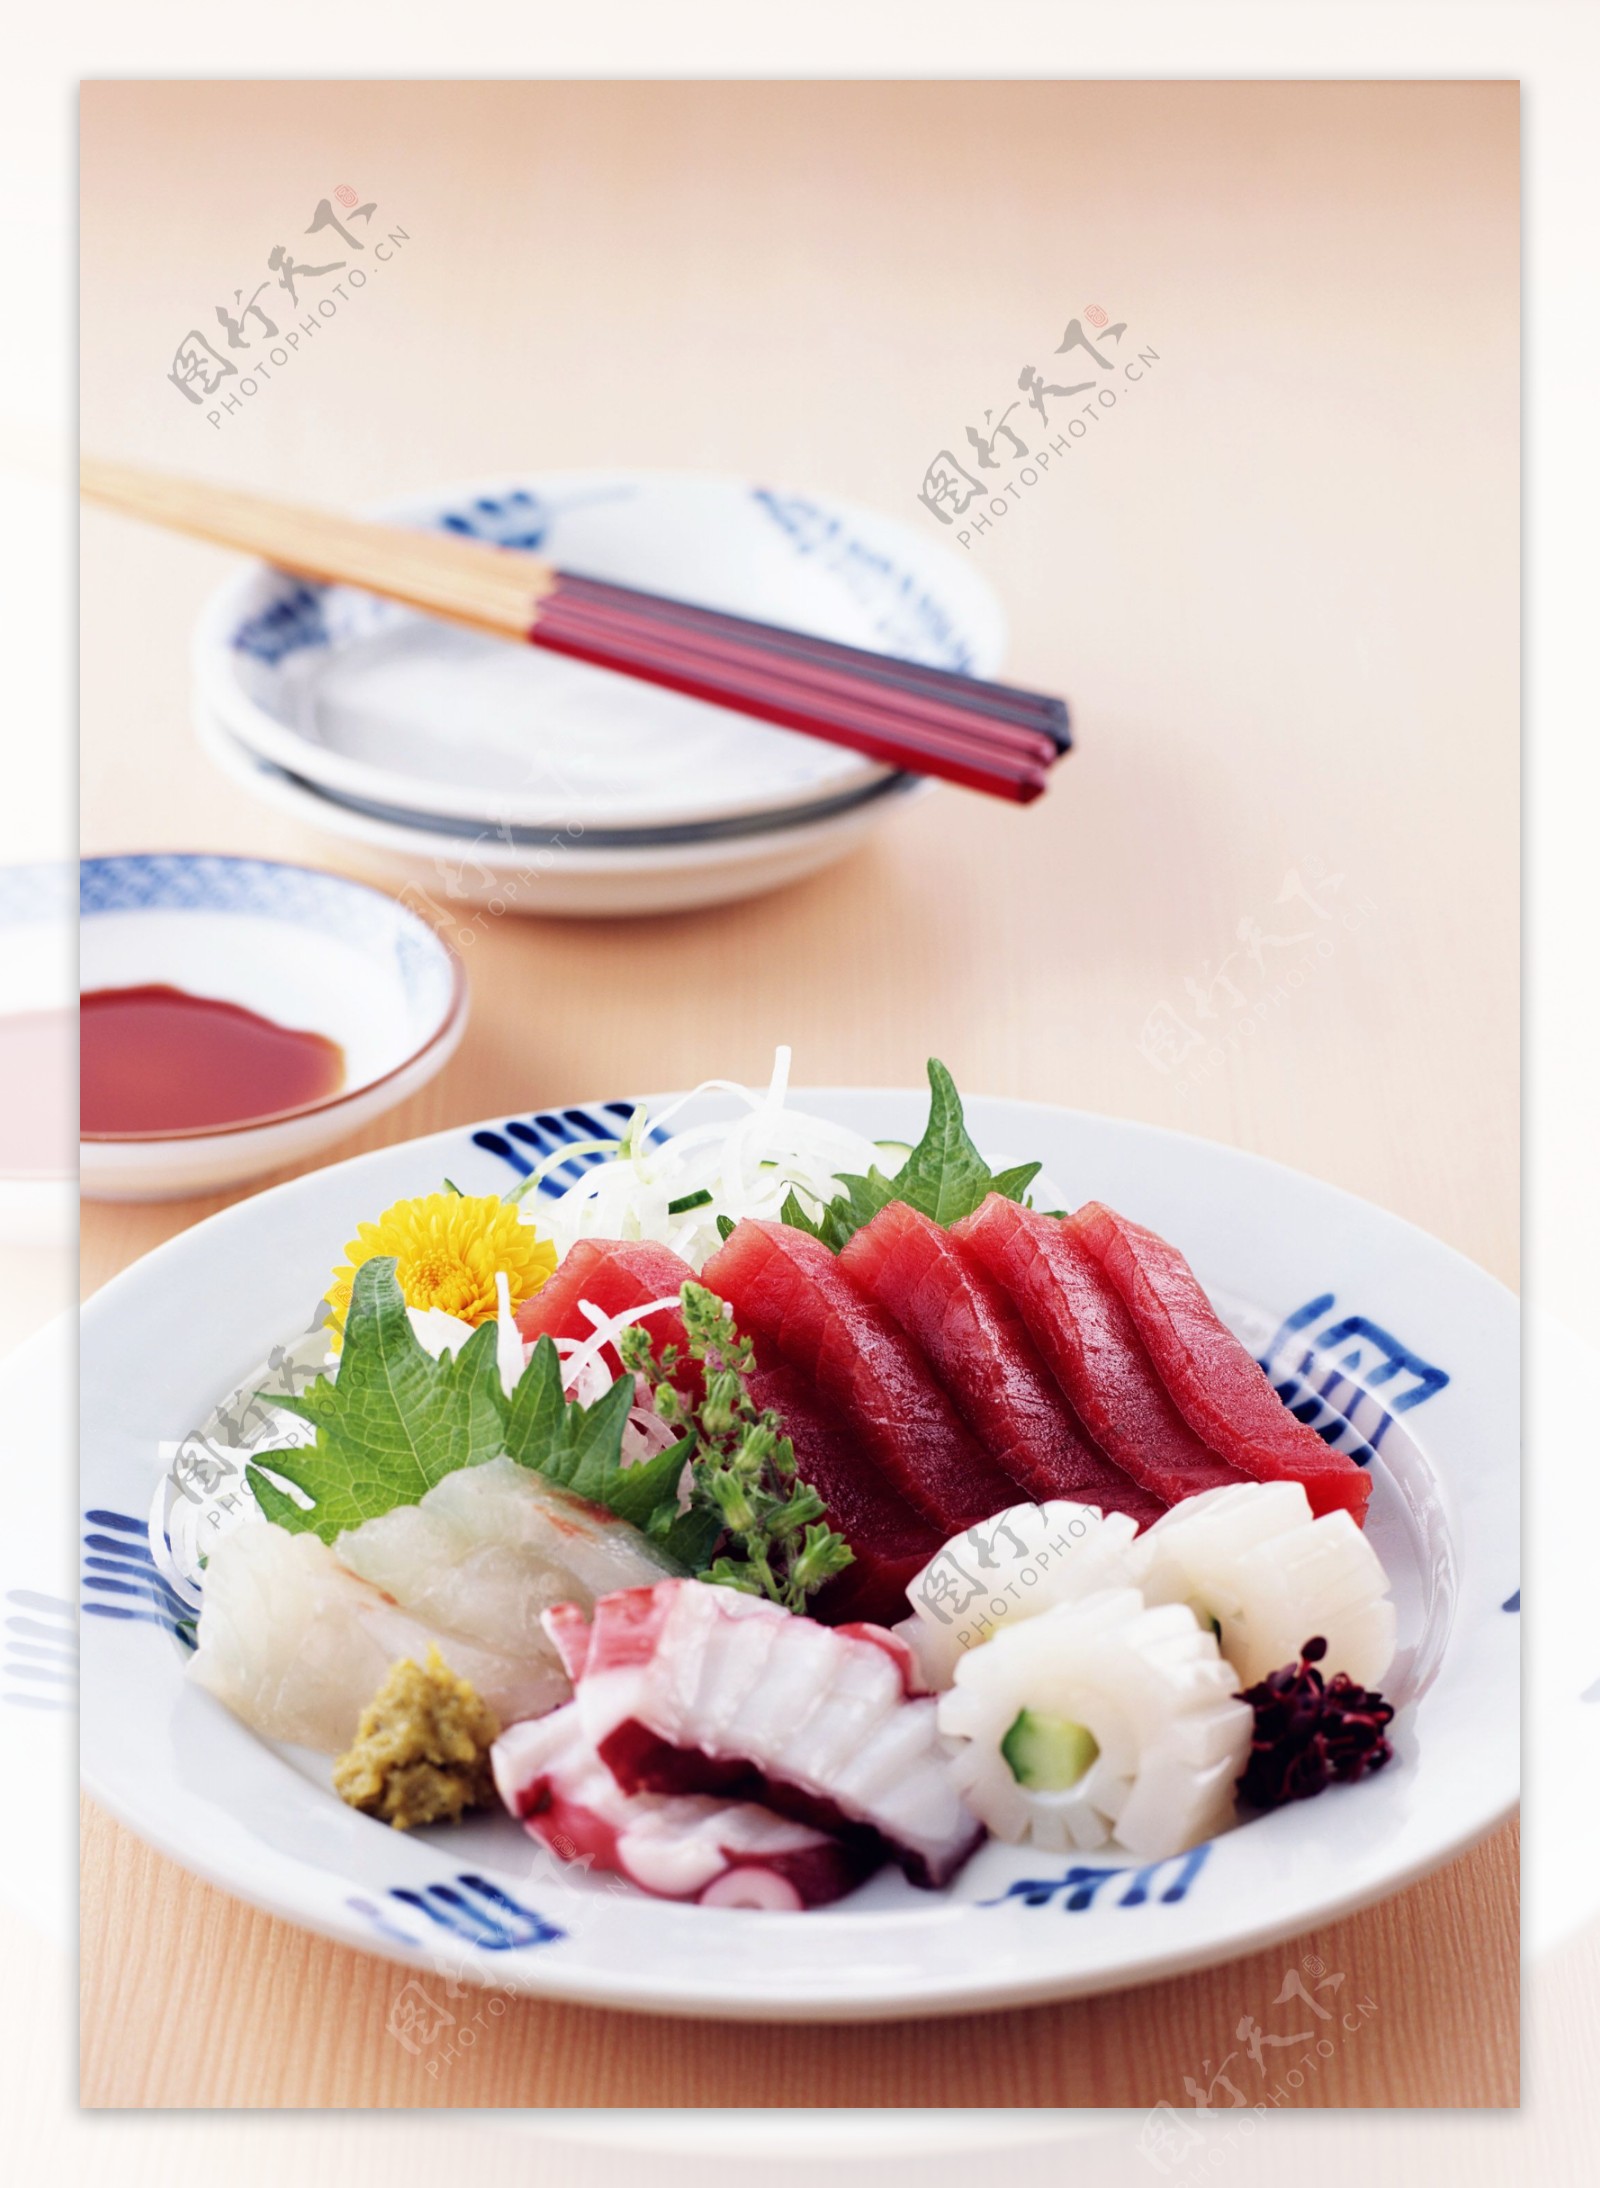 日式生鱼片图片